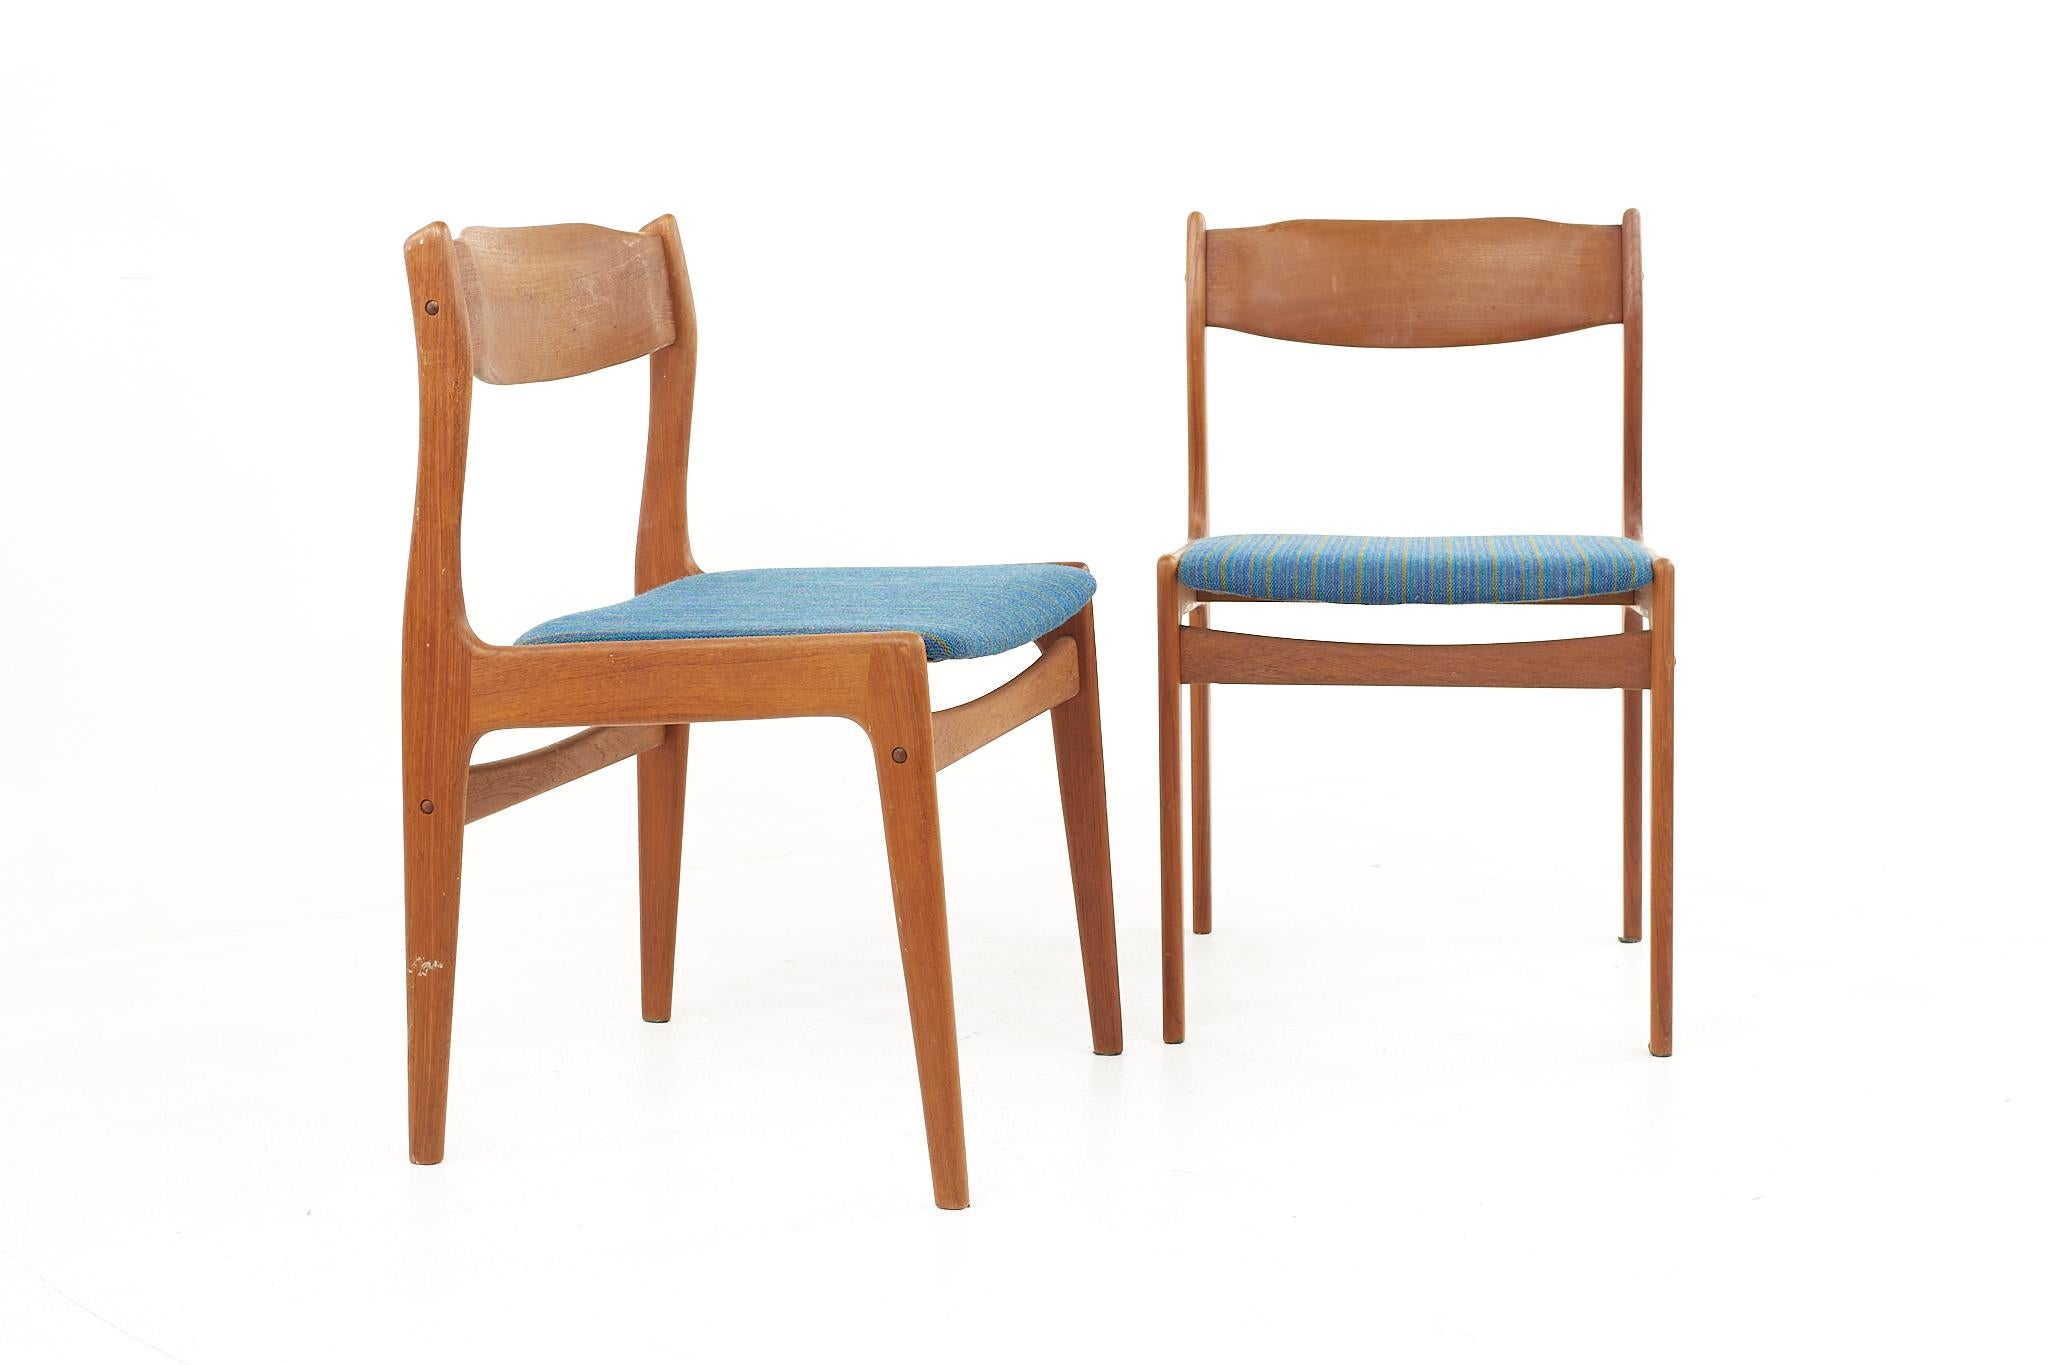 Chaises d'appoint danoises en teck du milieu du siècle dernier - une paire

Chaque chaise mesure : Largeur 19 x profondeur 19 x hauteur 30.5, avec une hauteur d'assise de 17.5 pouces. 

Tous les meubles peuvent être achetés dans ce que nous appelons